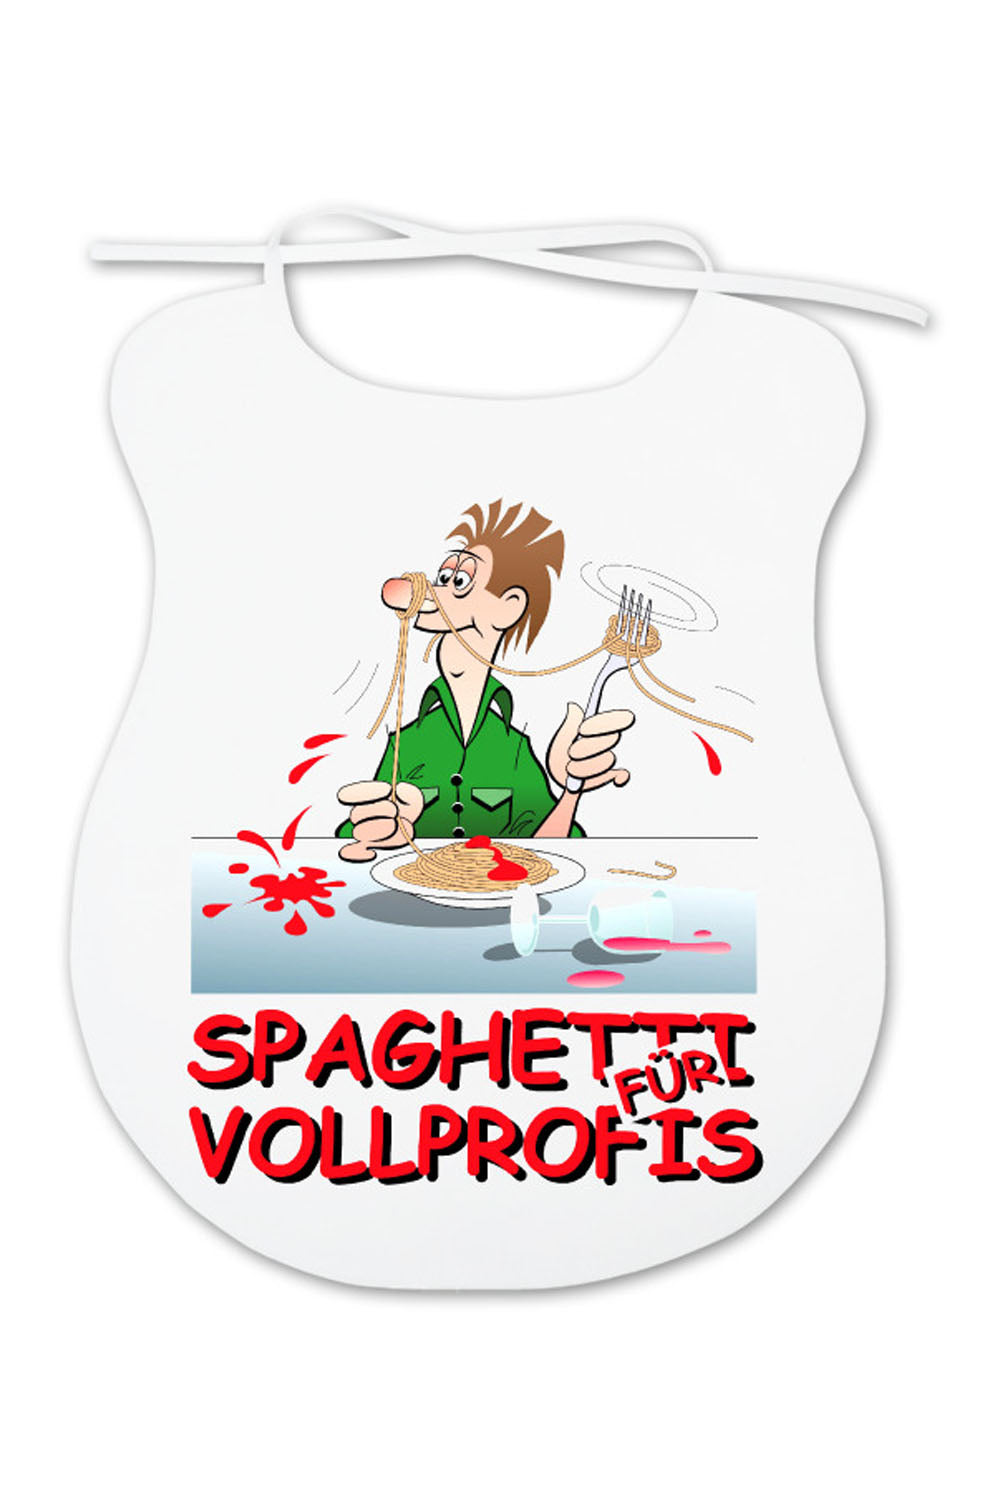 Auf dem Spaghettilatz ist ein witziges Bild aufgedruckt mit einem Mann, der als Vollprofi Spaghetti isst. Der Vollprofi Latz fuer Erwachsene ist aus Baumwolle und ca. 35 x 45 cm gross. Dieses witzige Geschenk oder Mitbringsel eignet sich hervorragend auch als Gutscheingeschenk fuer eine Einladung ins Restaurant. 